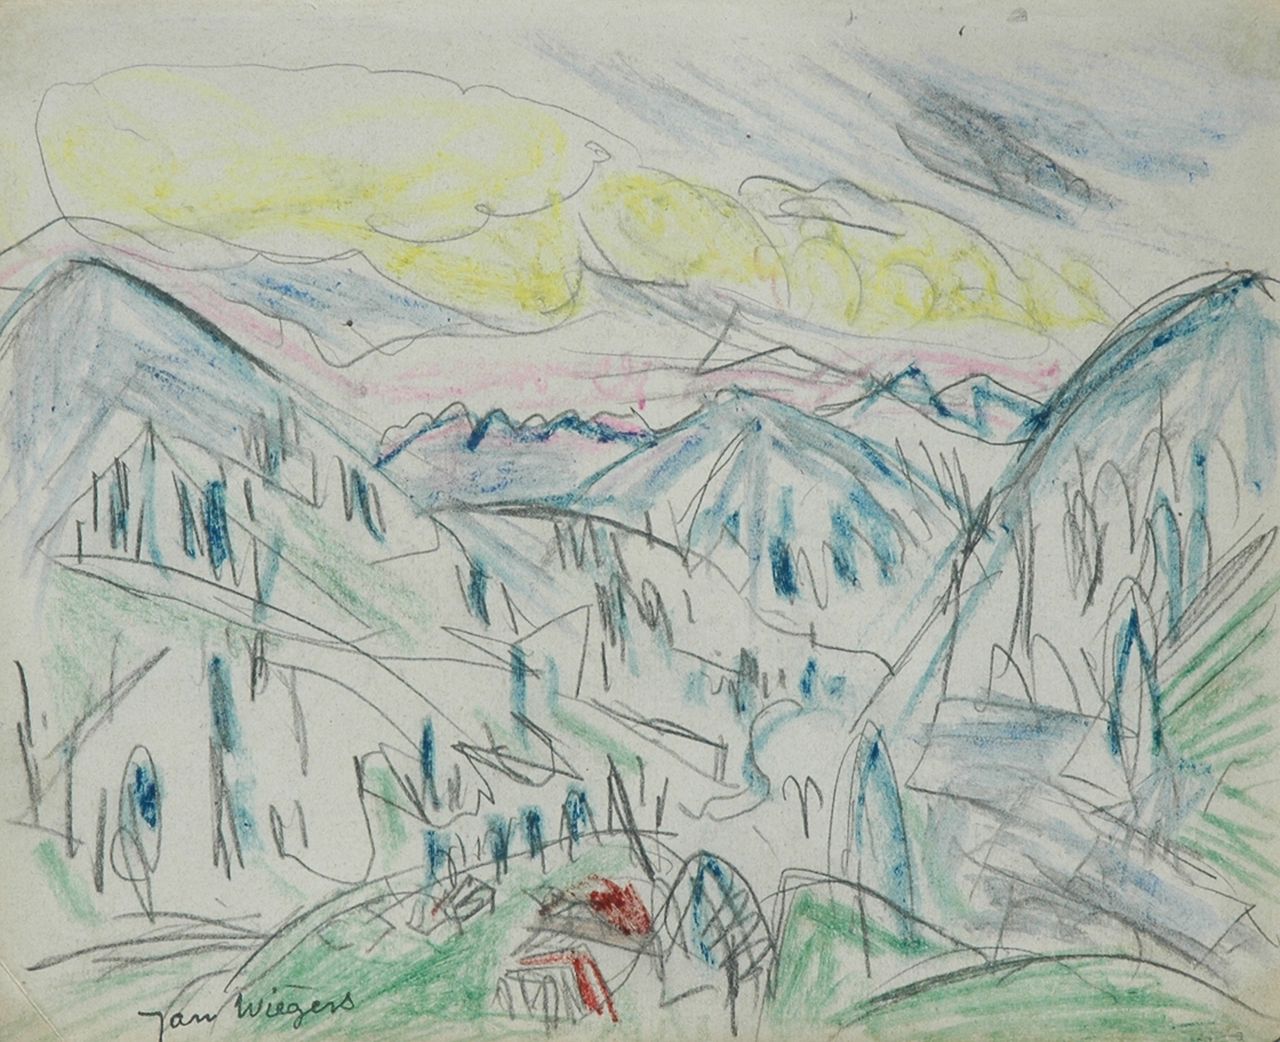 Wiegers J.  | Jan Wiegers, Mountain landscape Davos; verso: sketch of a boy, Bleistift und Wachskreide auf Papier 17,5 x 21,7 cm, signed l.l. with stamp